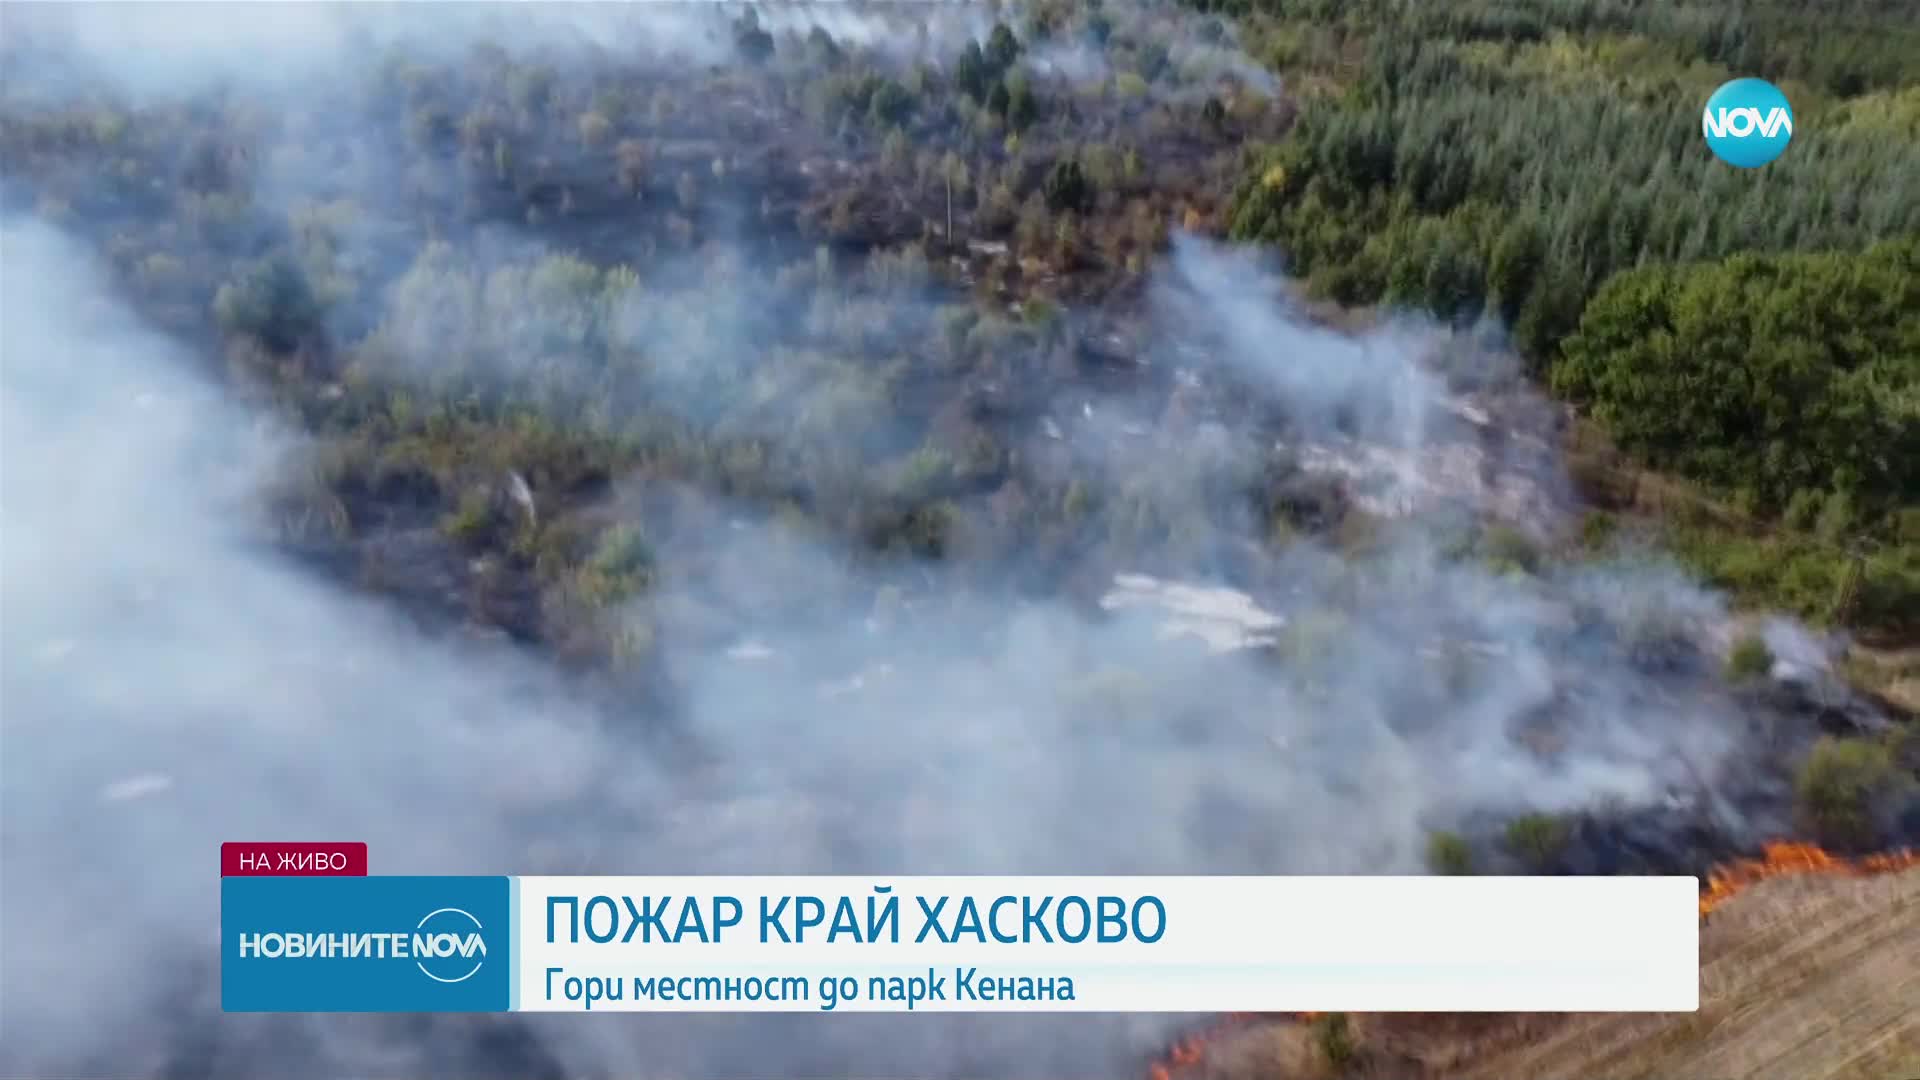 Голям пожар избухна в Хасково